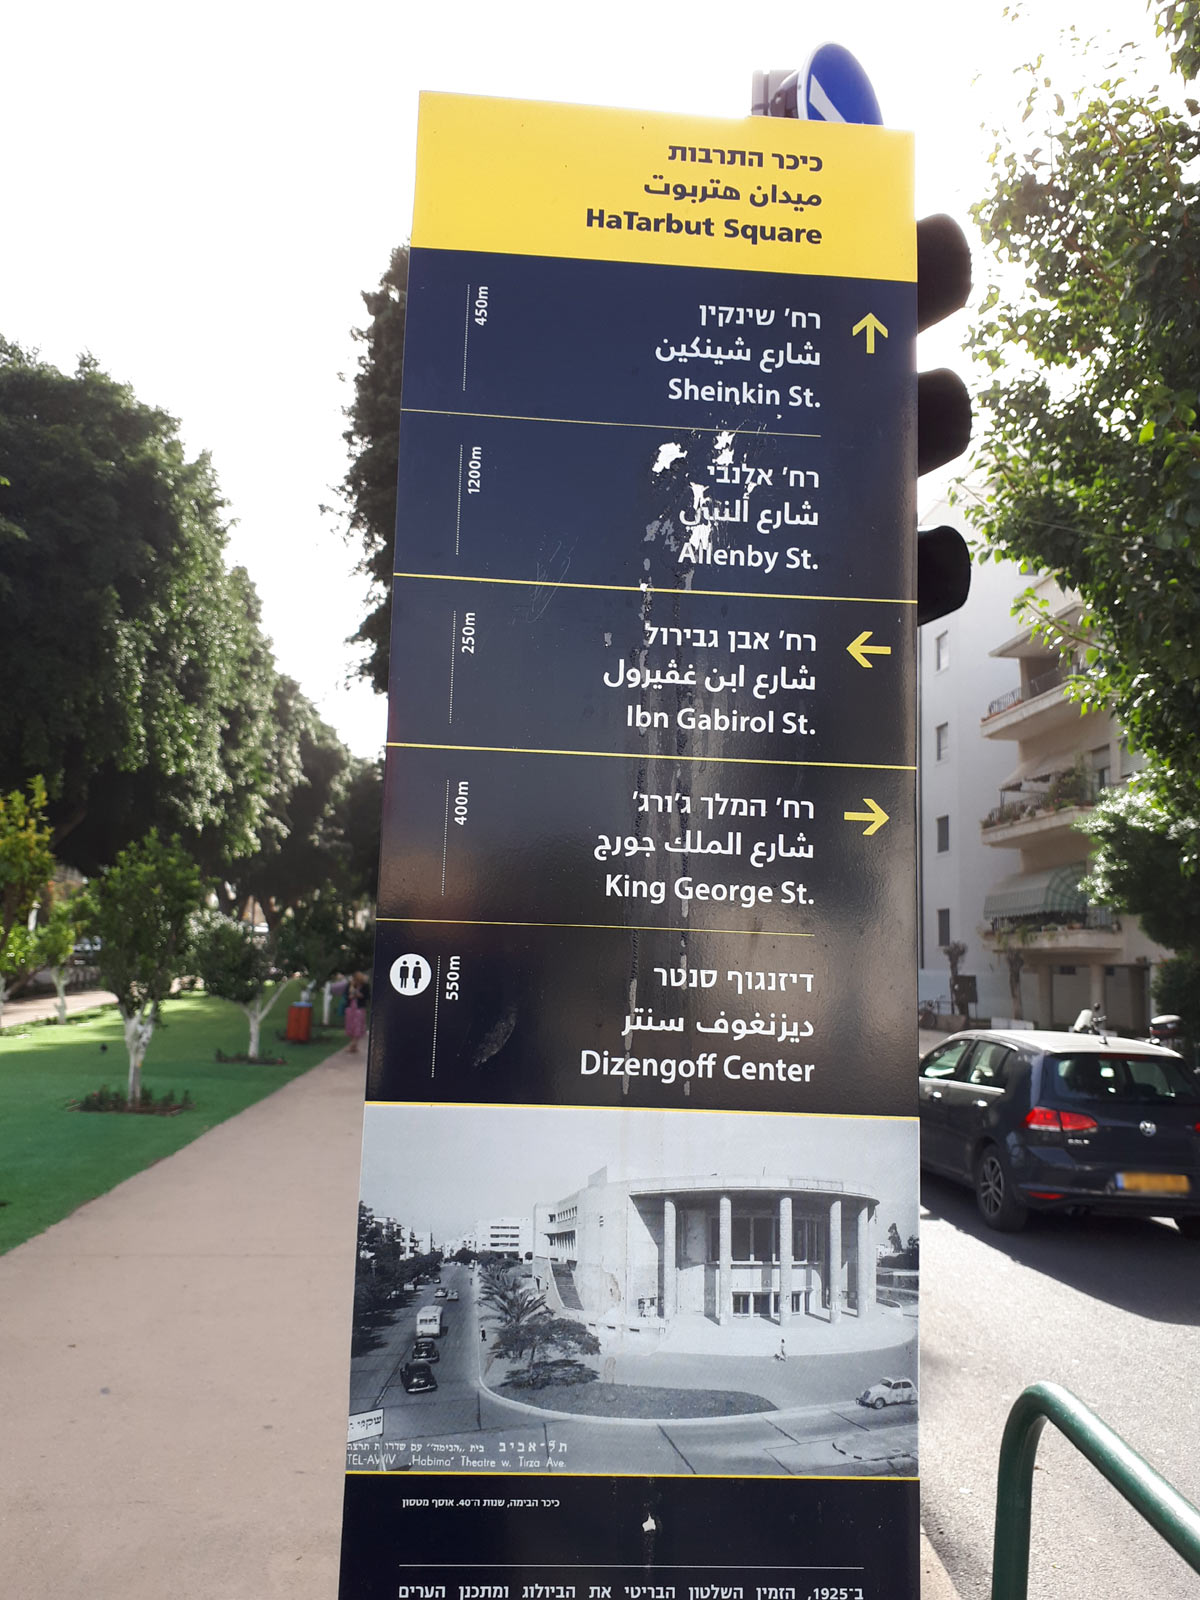 Tel Aviv - HaTarbut Square